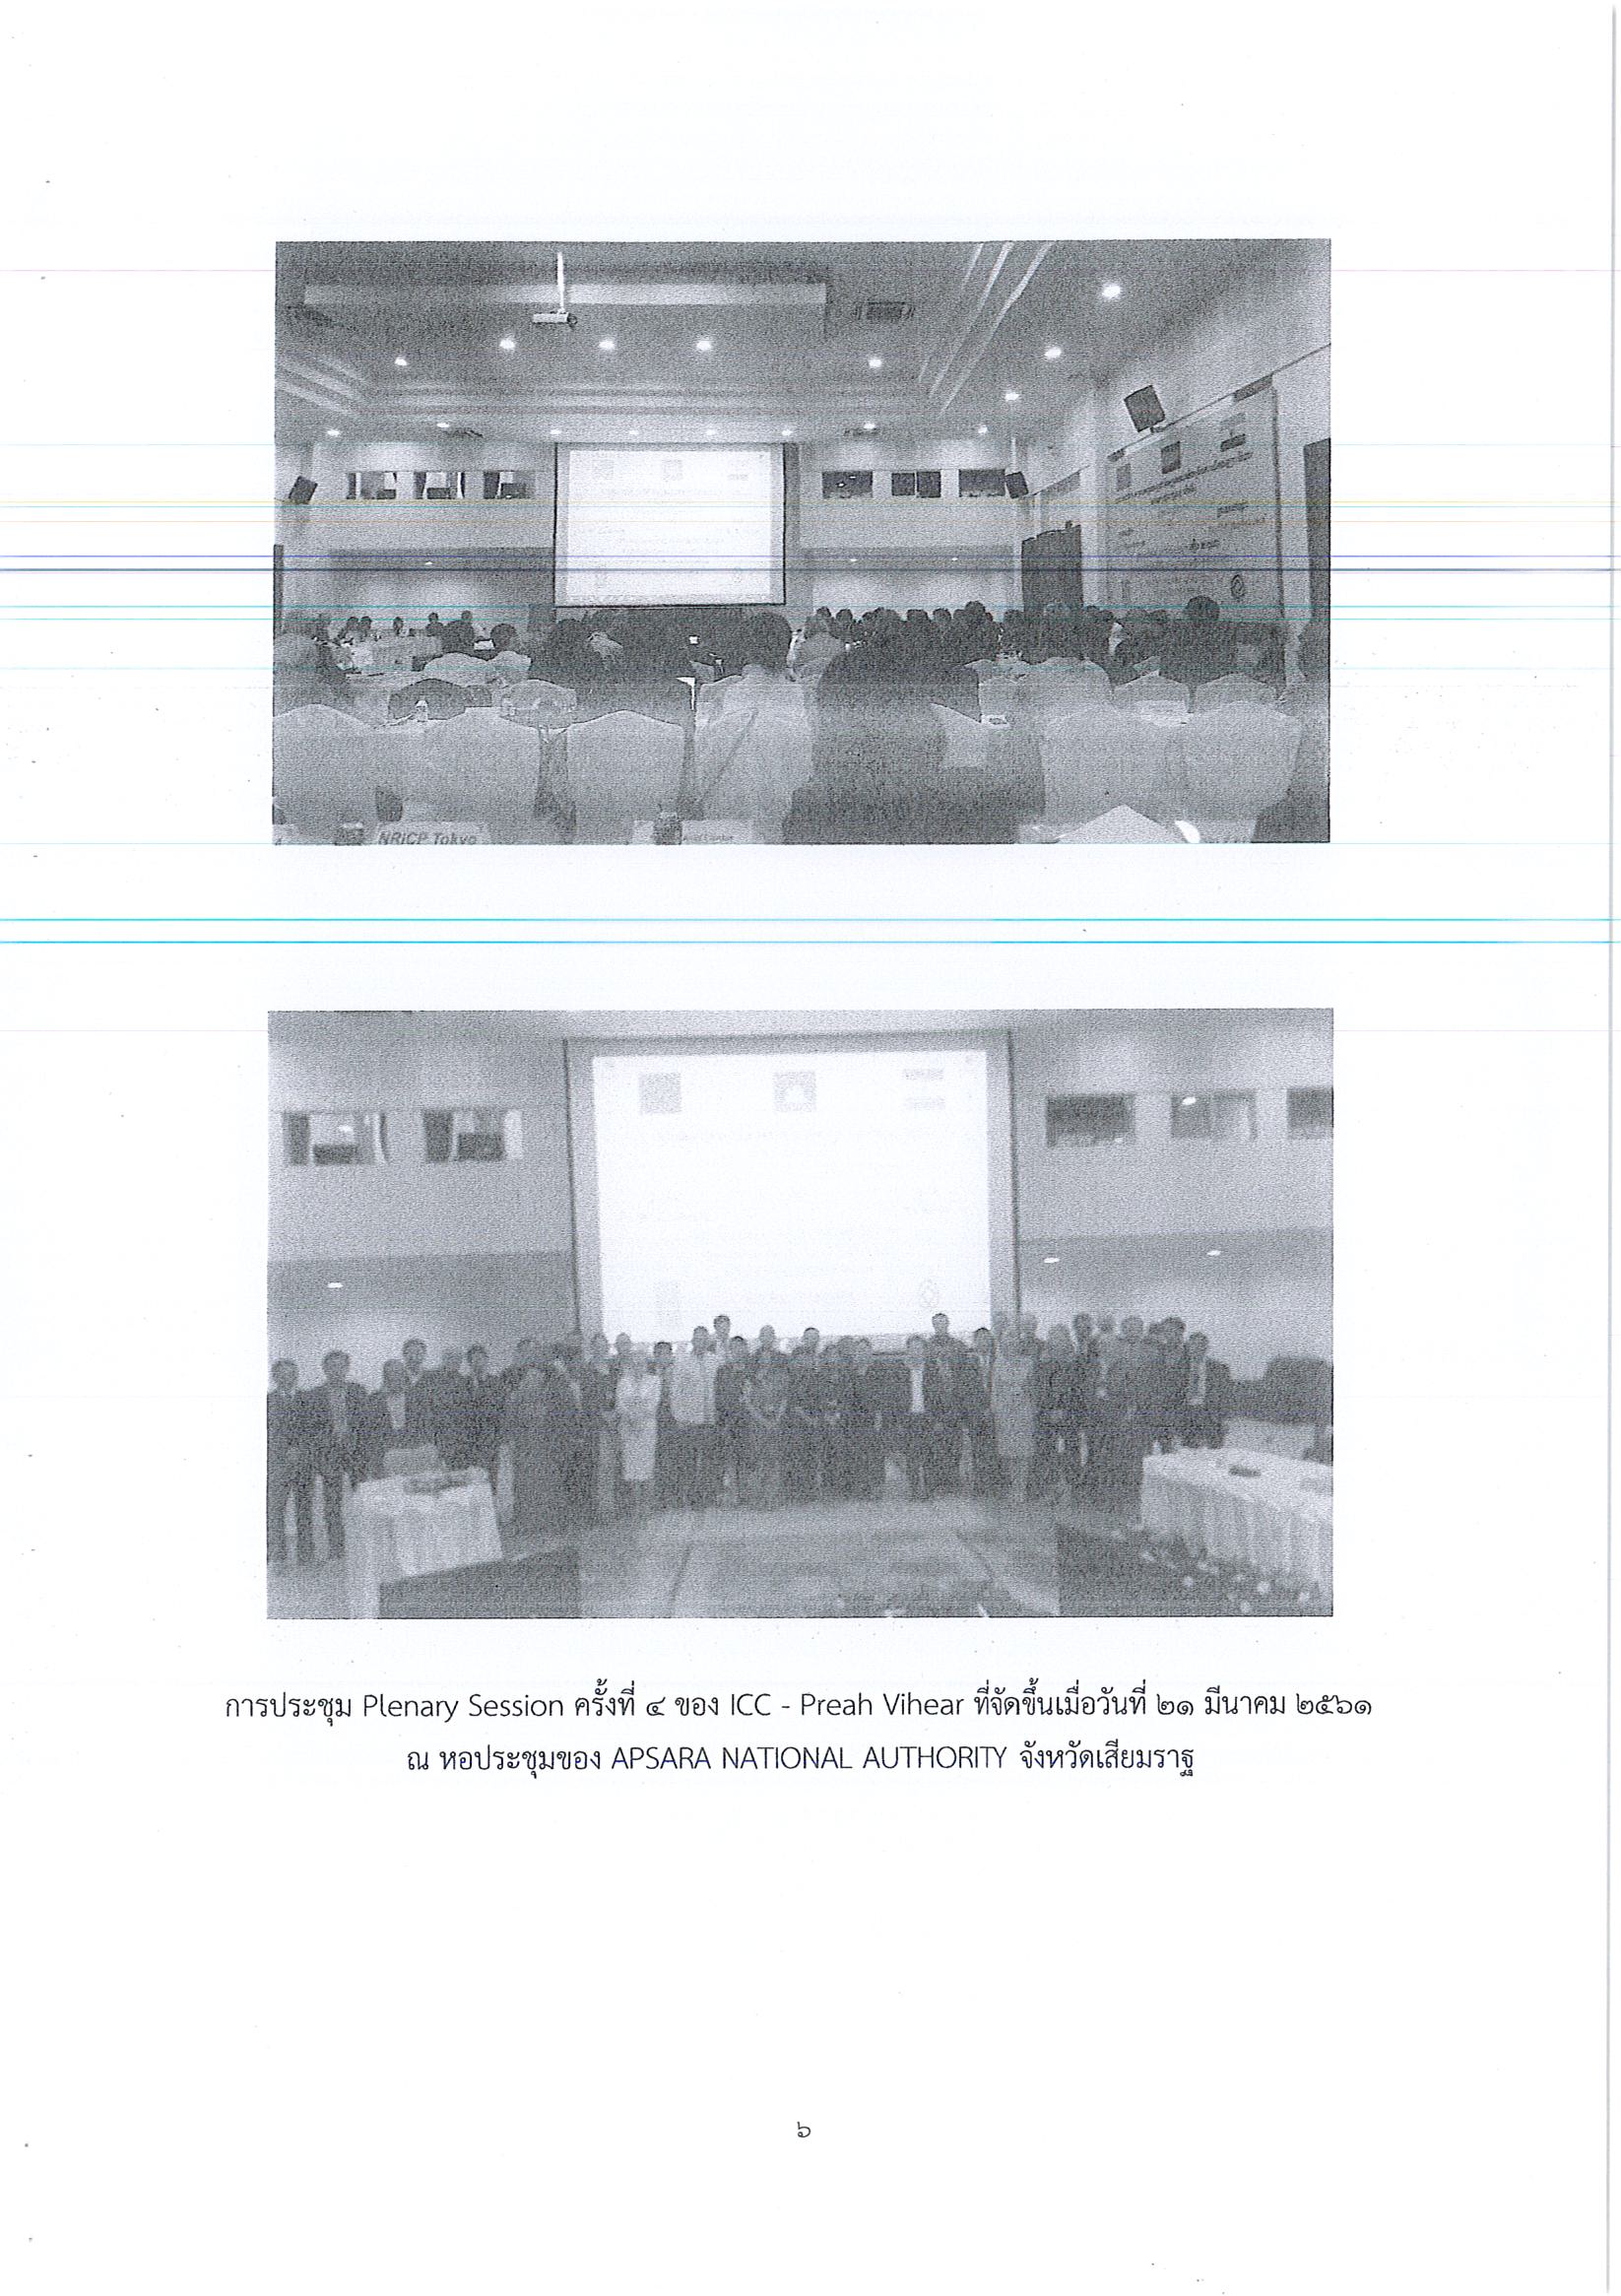 รายงานการเดินทางไปราชการ ณ ราชอาณาจักรกัมพูชา ระหว่างวันที่ 19 – 21 มีนาคม 2561 โครงการประชุม The 4th Plenary Session ของคณะกรรมการประสานงานระหว่างประเทศเพื่อคุ้มครองประสาทพระวิหาร (ICC – Preah Vihear)